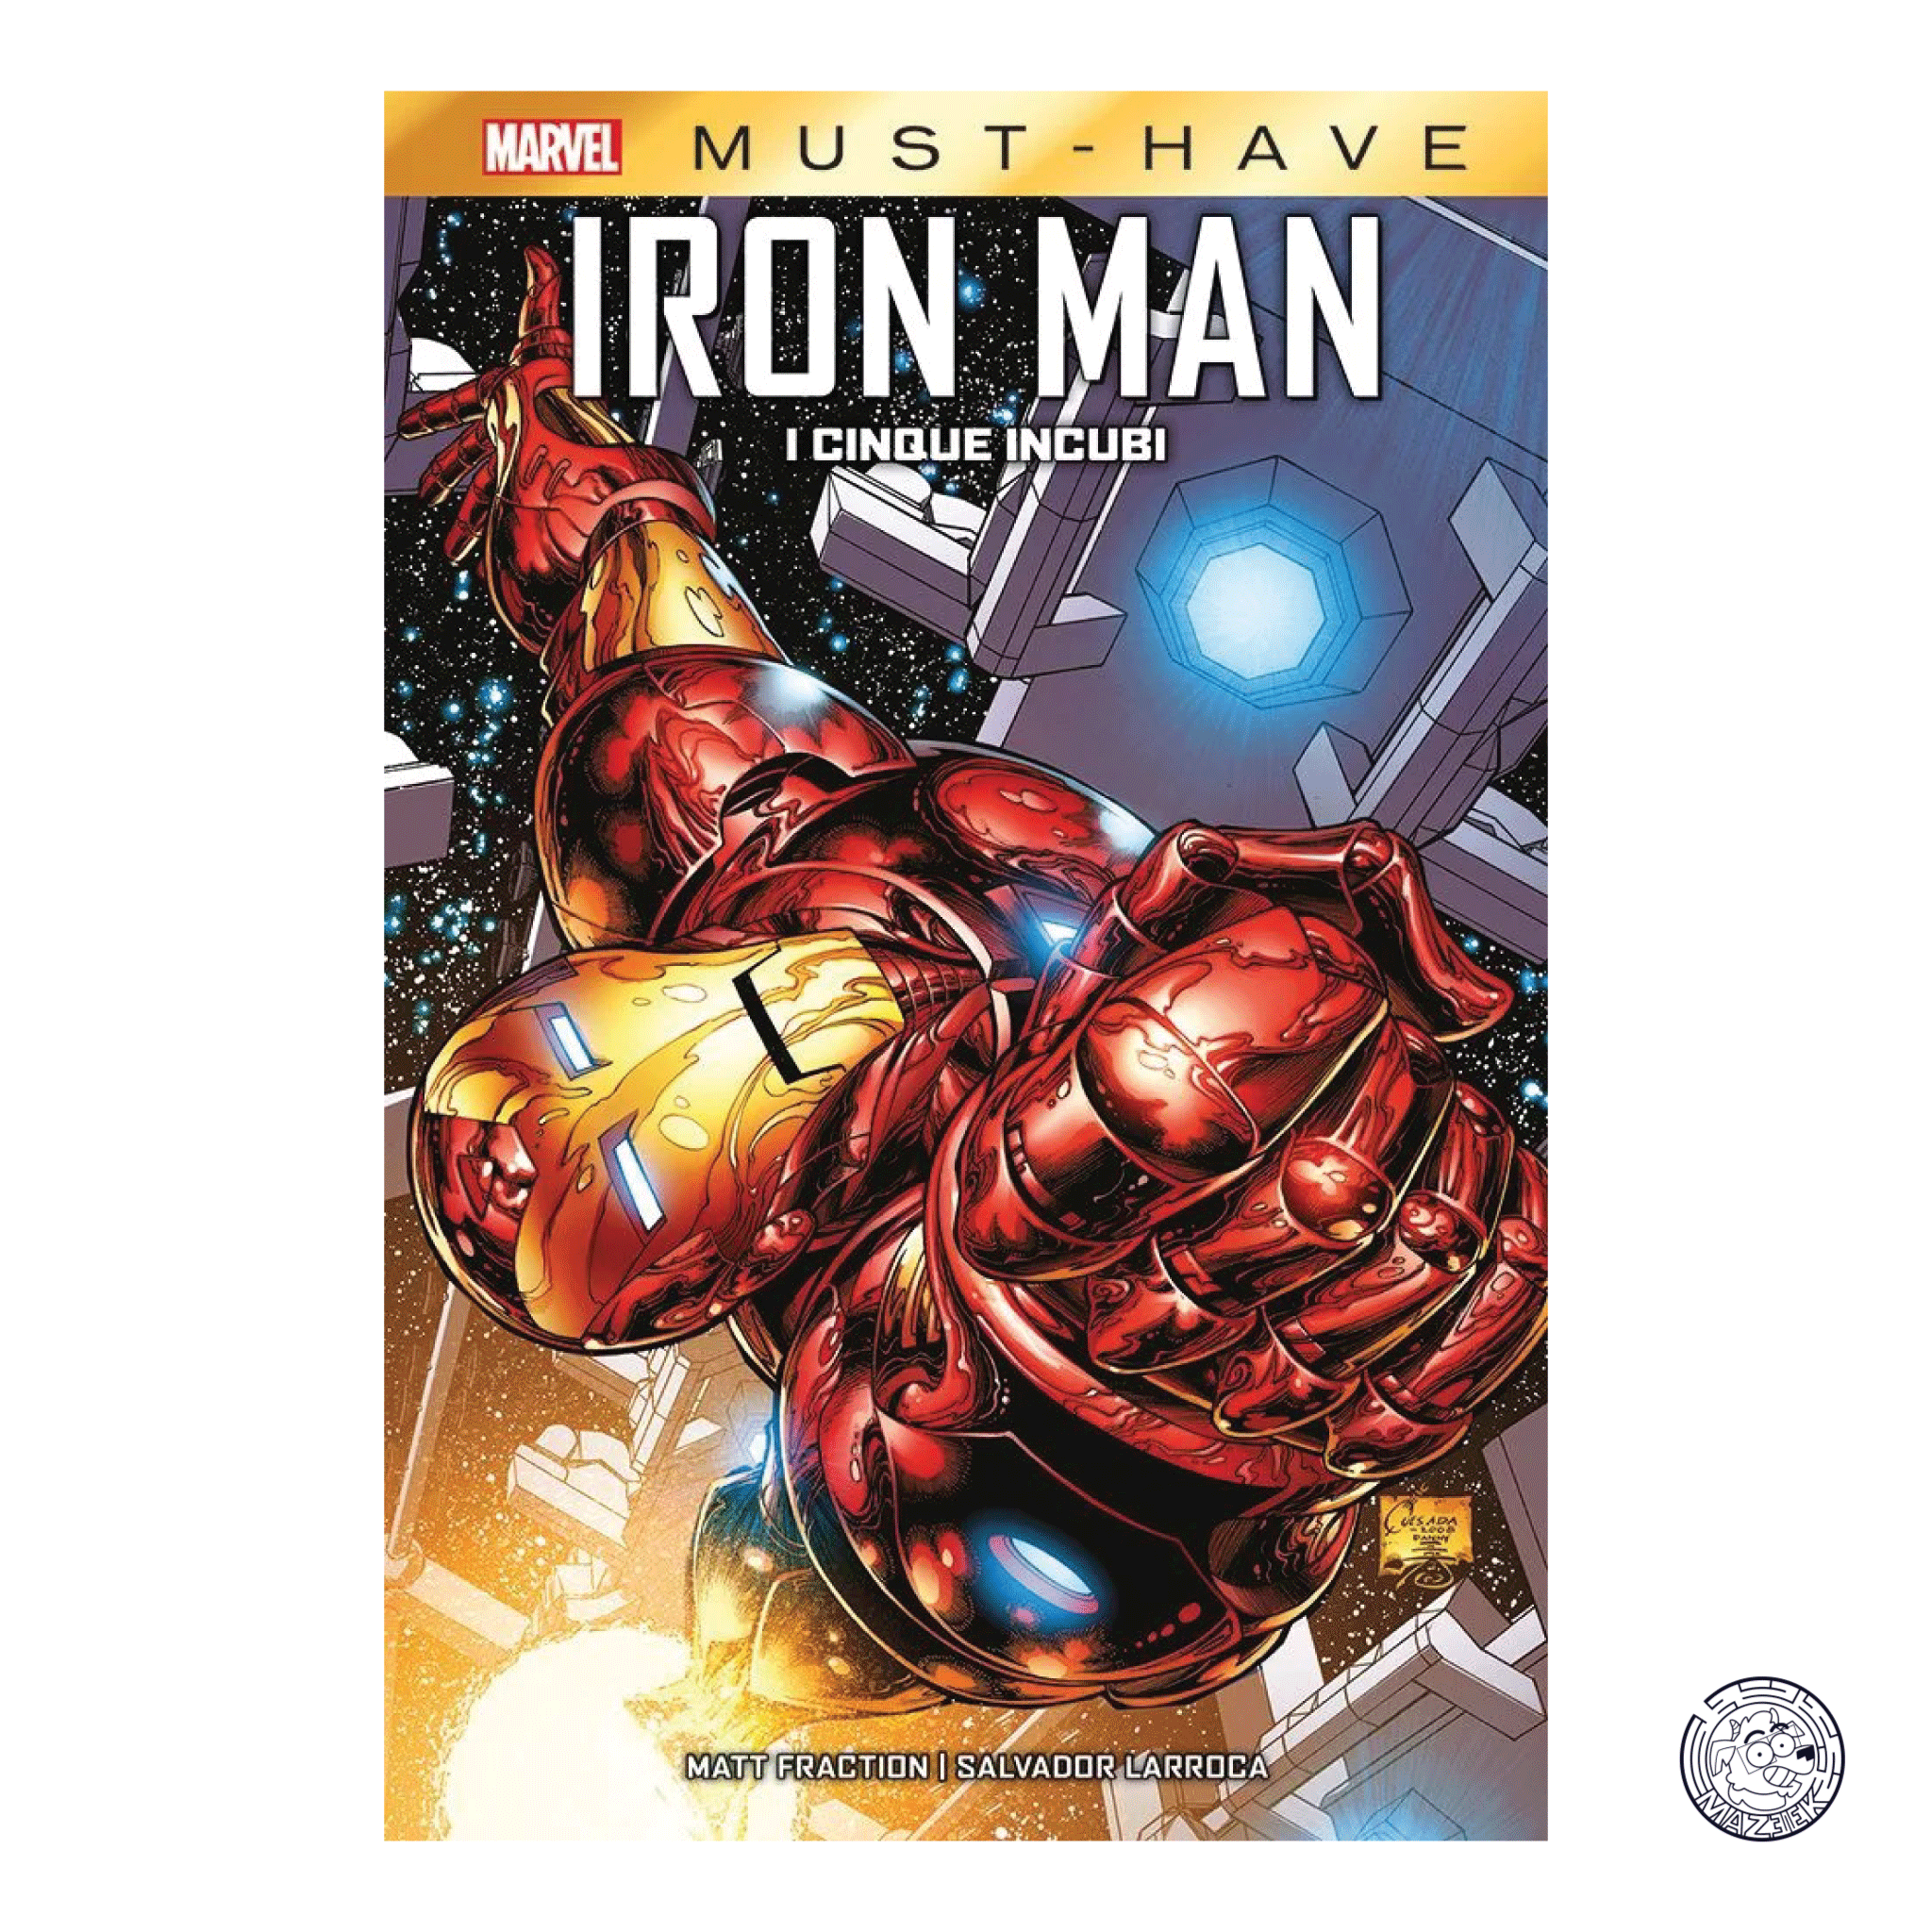 Marvel Must Have - Iron Man: I Cinque Incubi